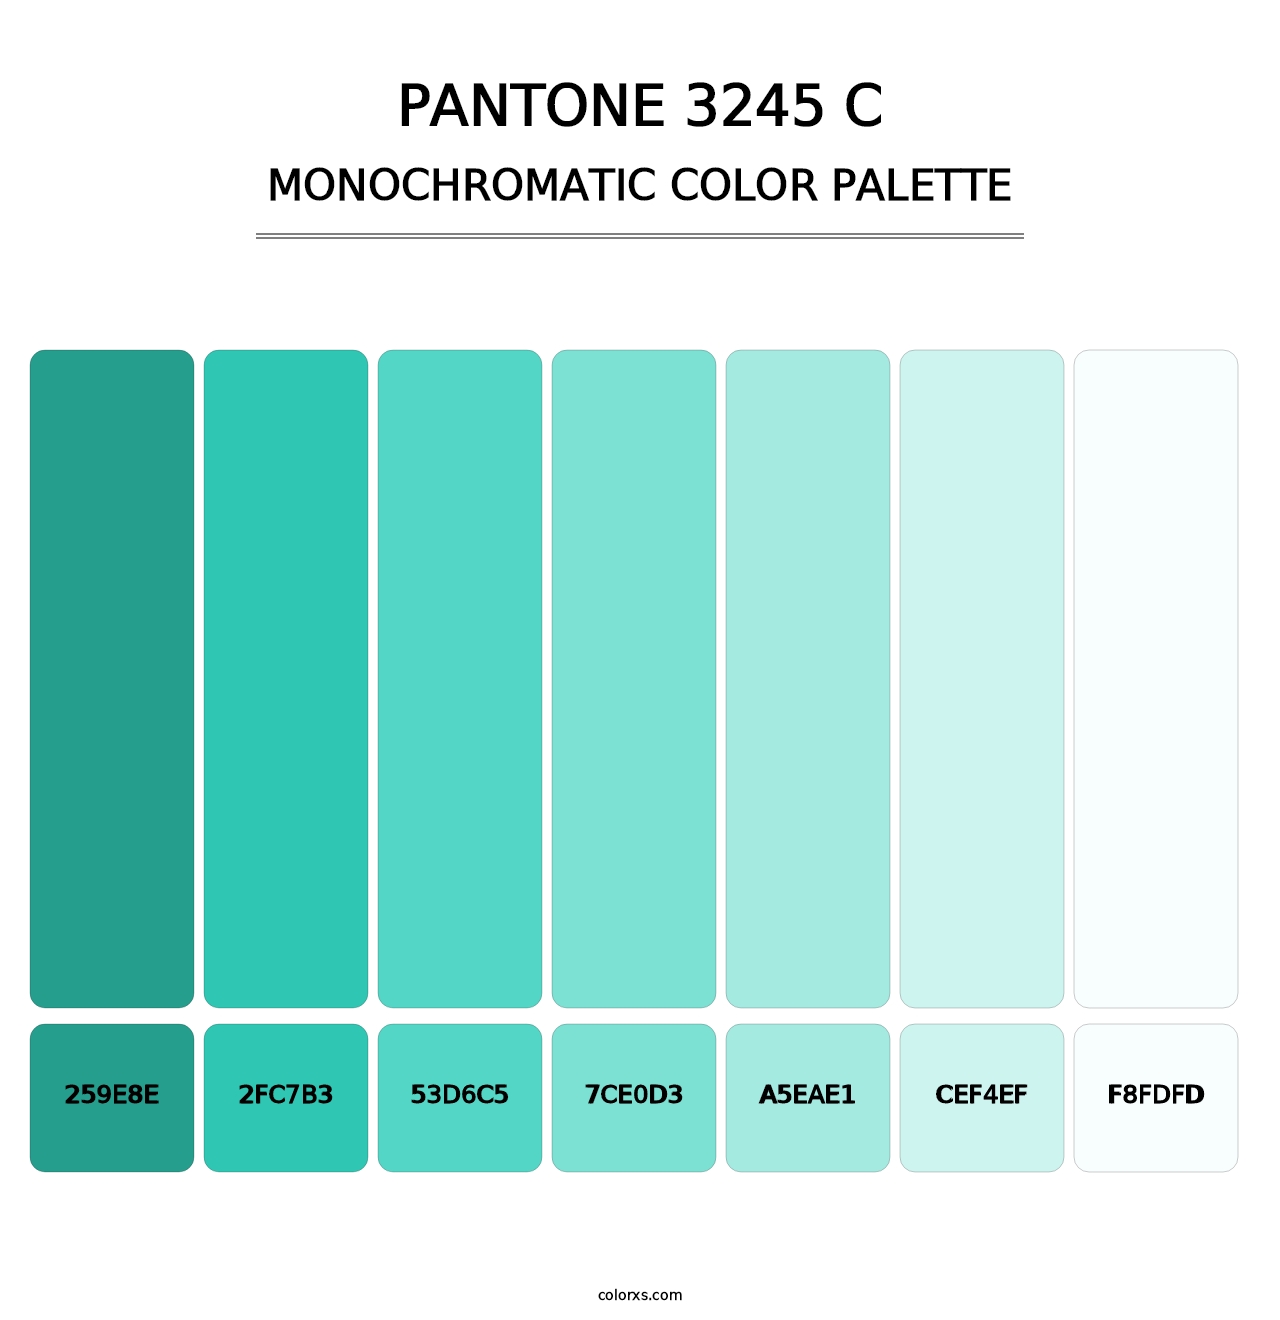 PANTONE 3245 C - Monochromatic Color Palette